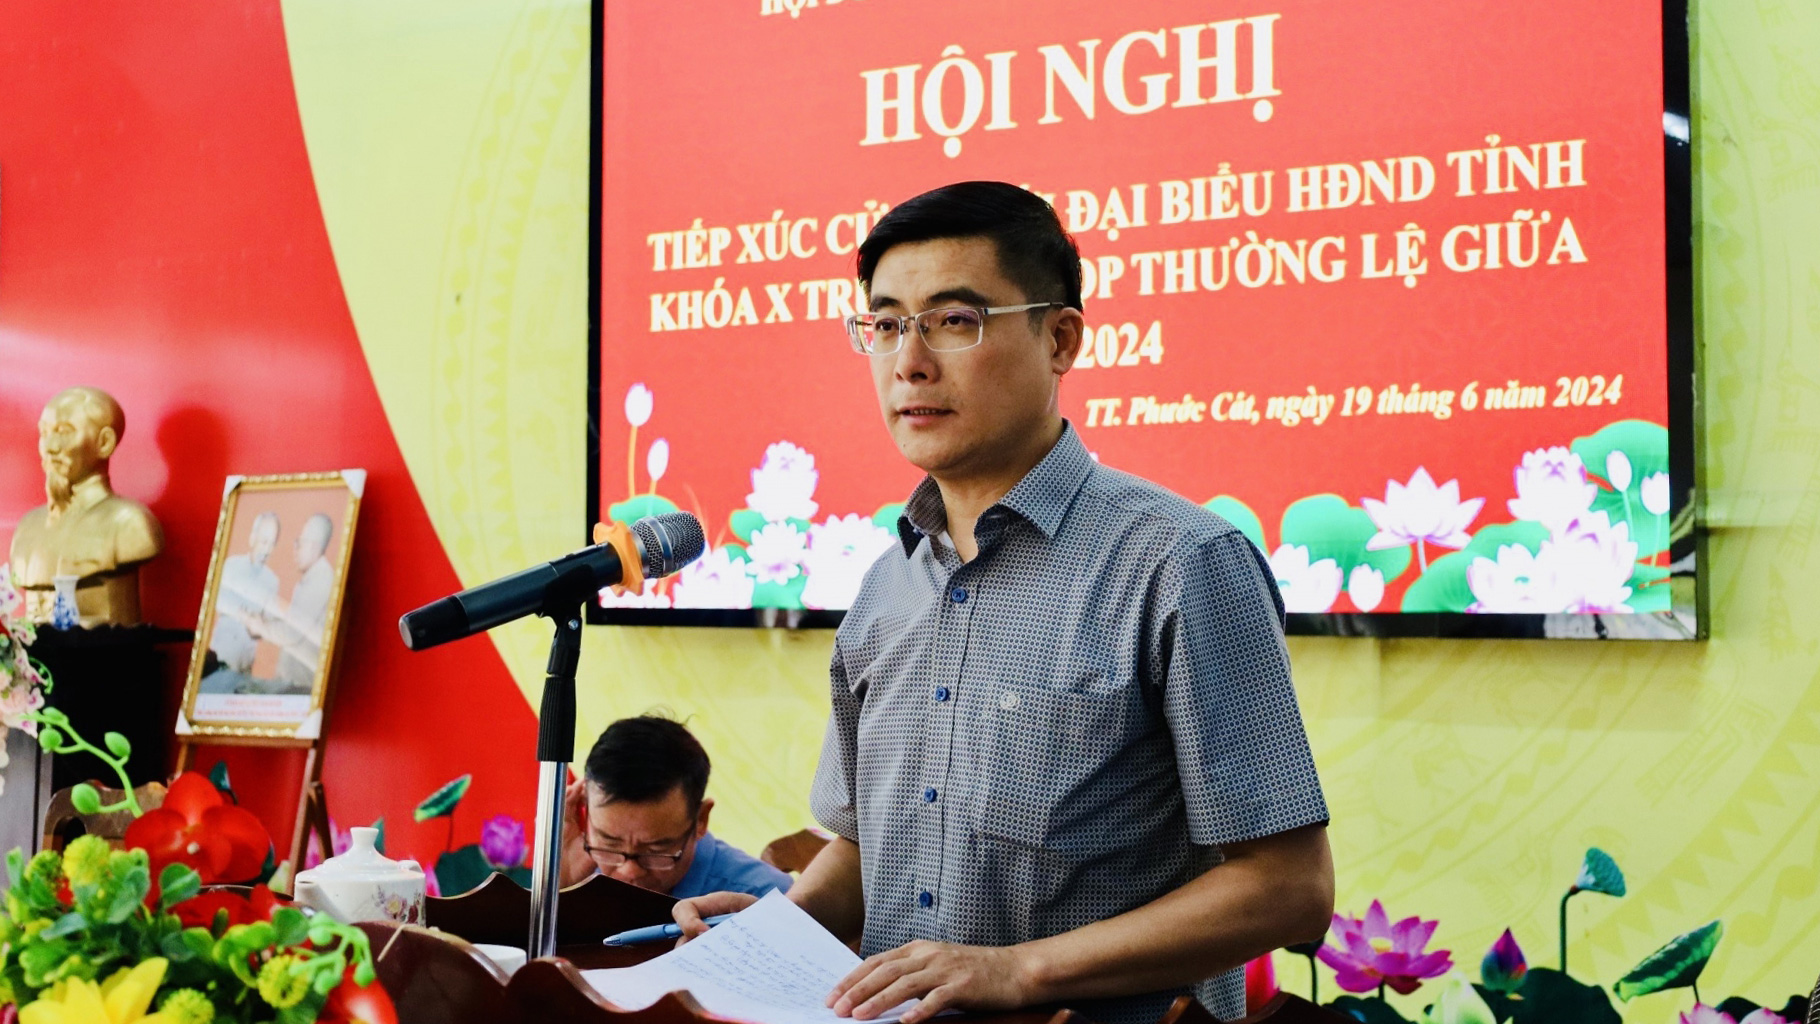 Phó Chủ tịch HĐND tỉnh Nguyễn Khắc Bình tiếp thu, ghi nhận và giải trình các kiến nghị của cử tri thuộc thẩm quyền